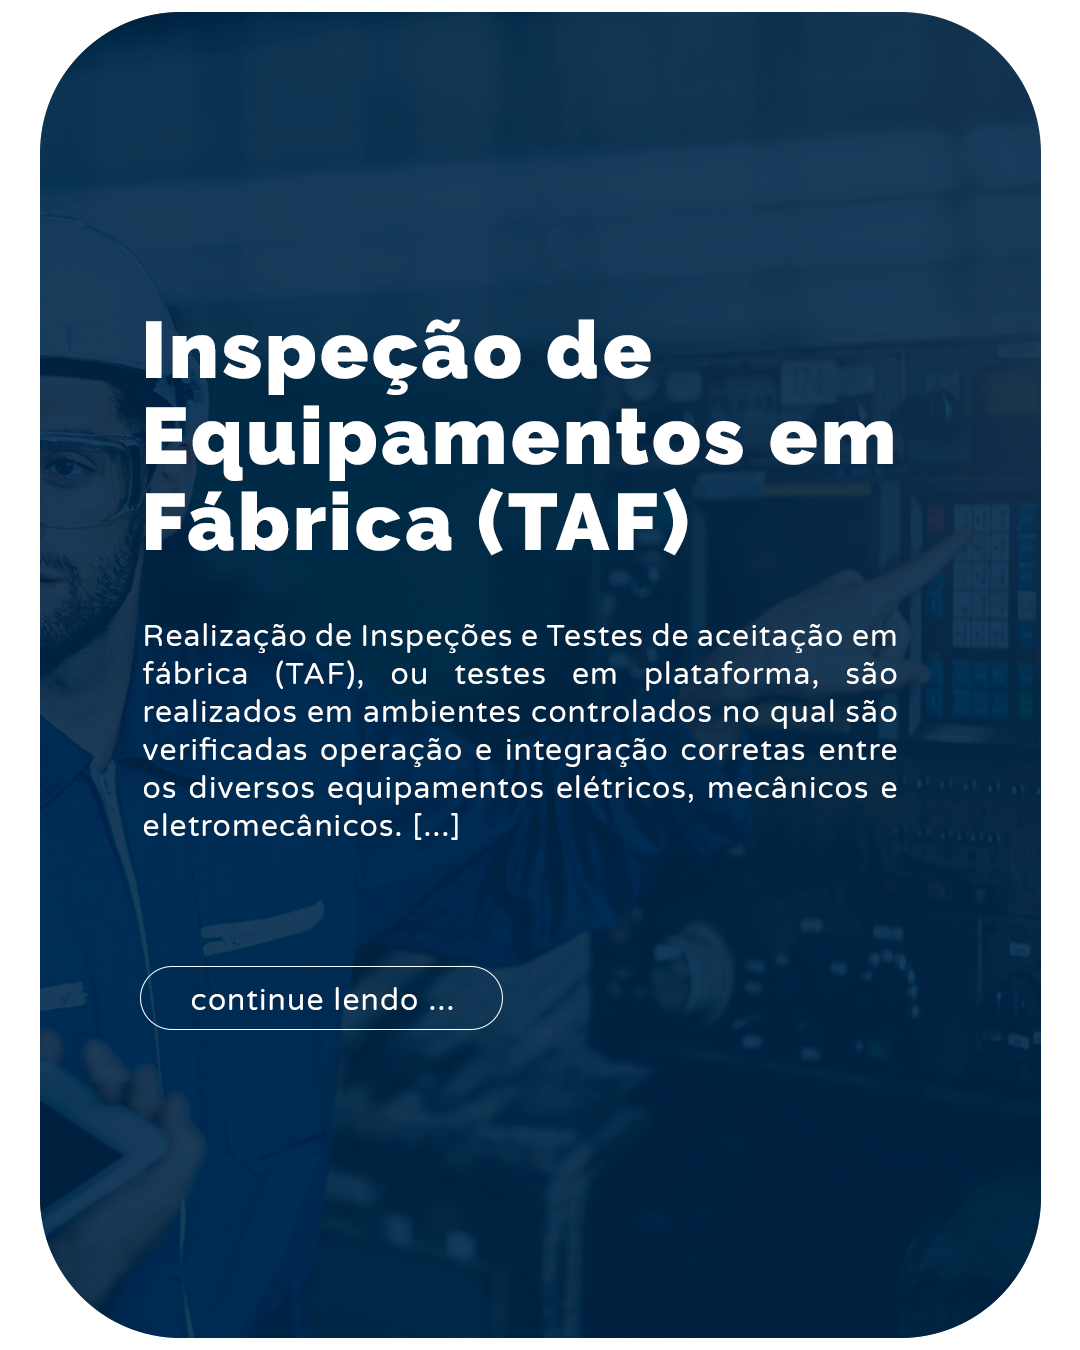 inspecao de equipamentos em fabricas (taf)